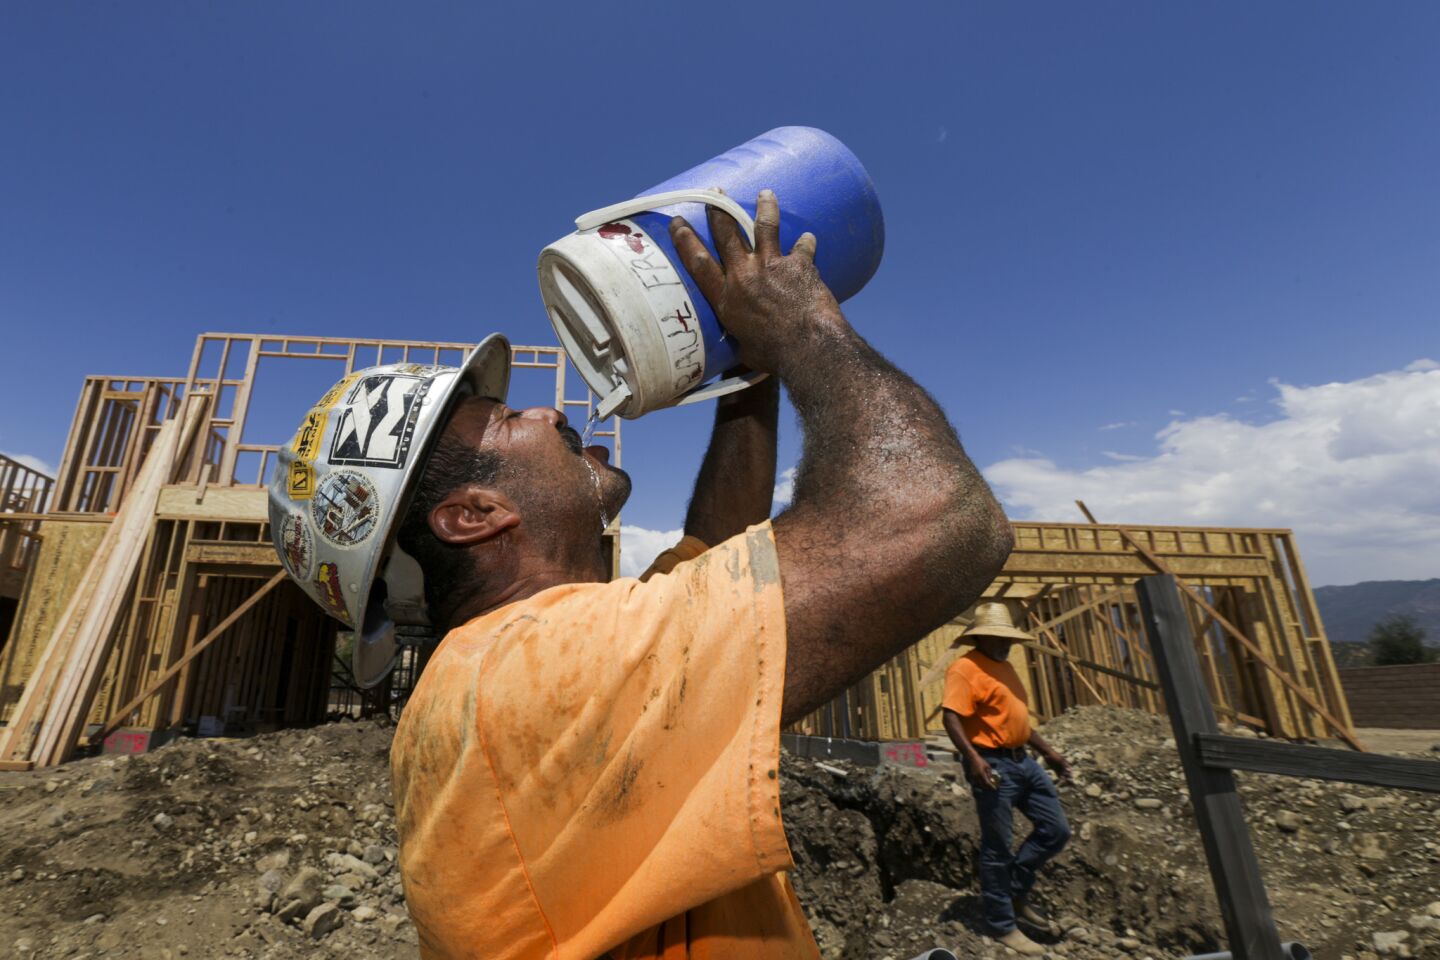 Reginaldo Ramirez gulps cold water after working in San Bernardino, which hit 111 degrees on Wednesday.